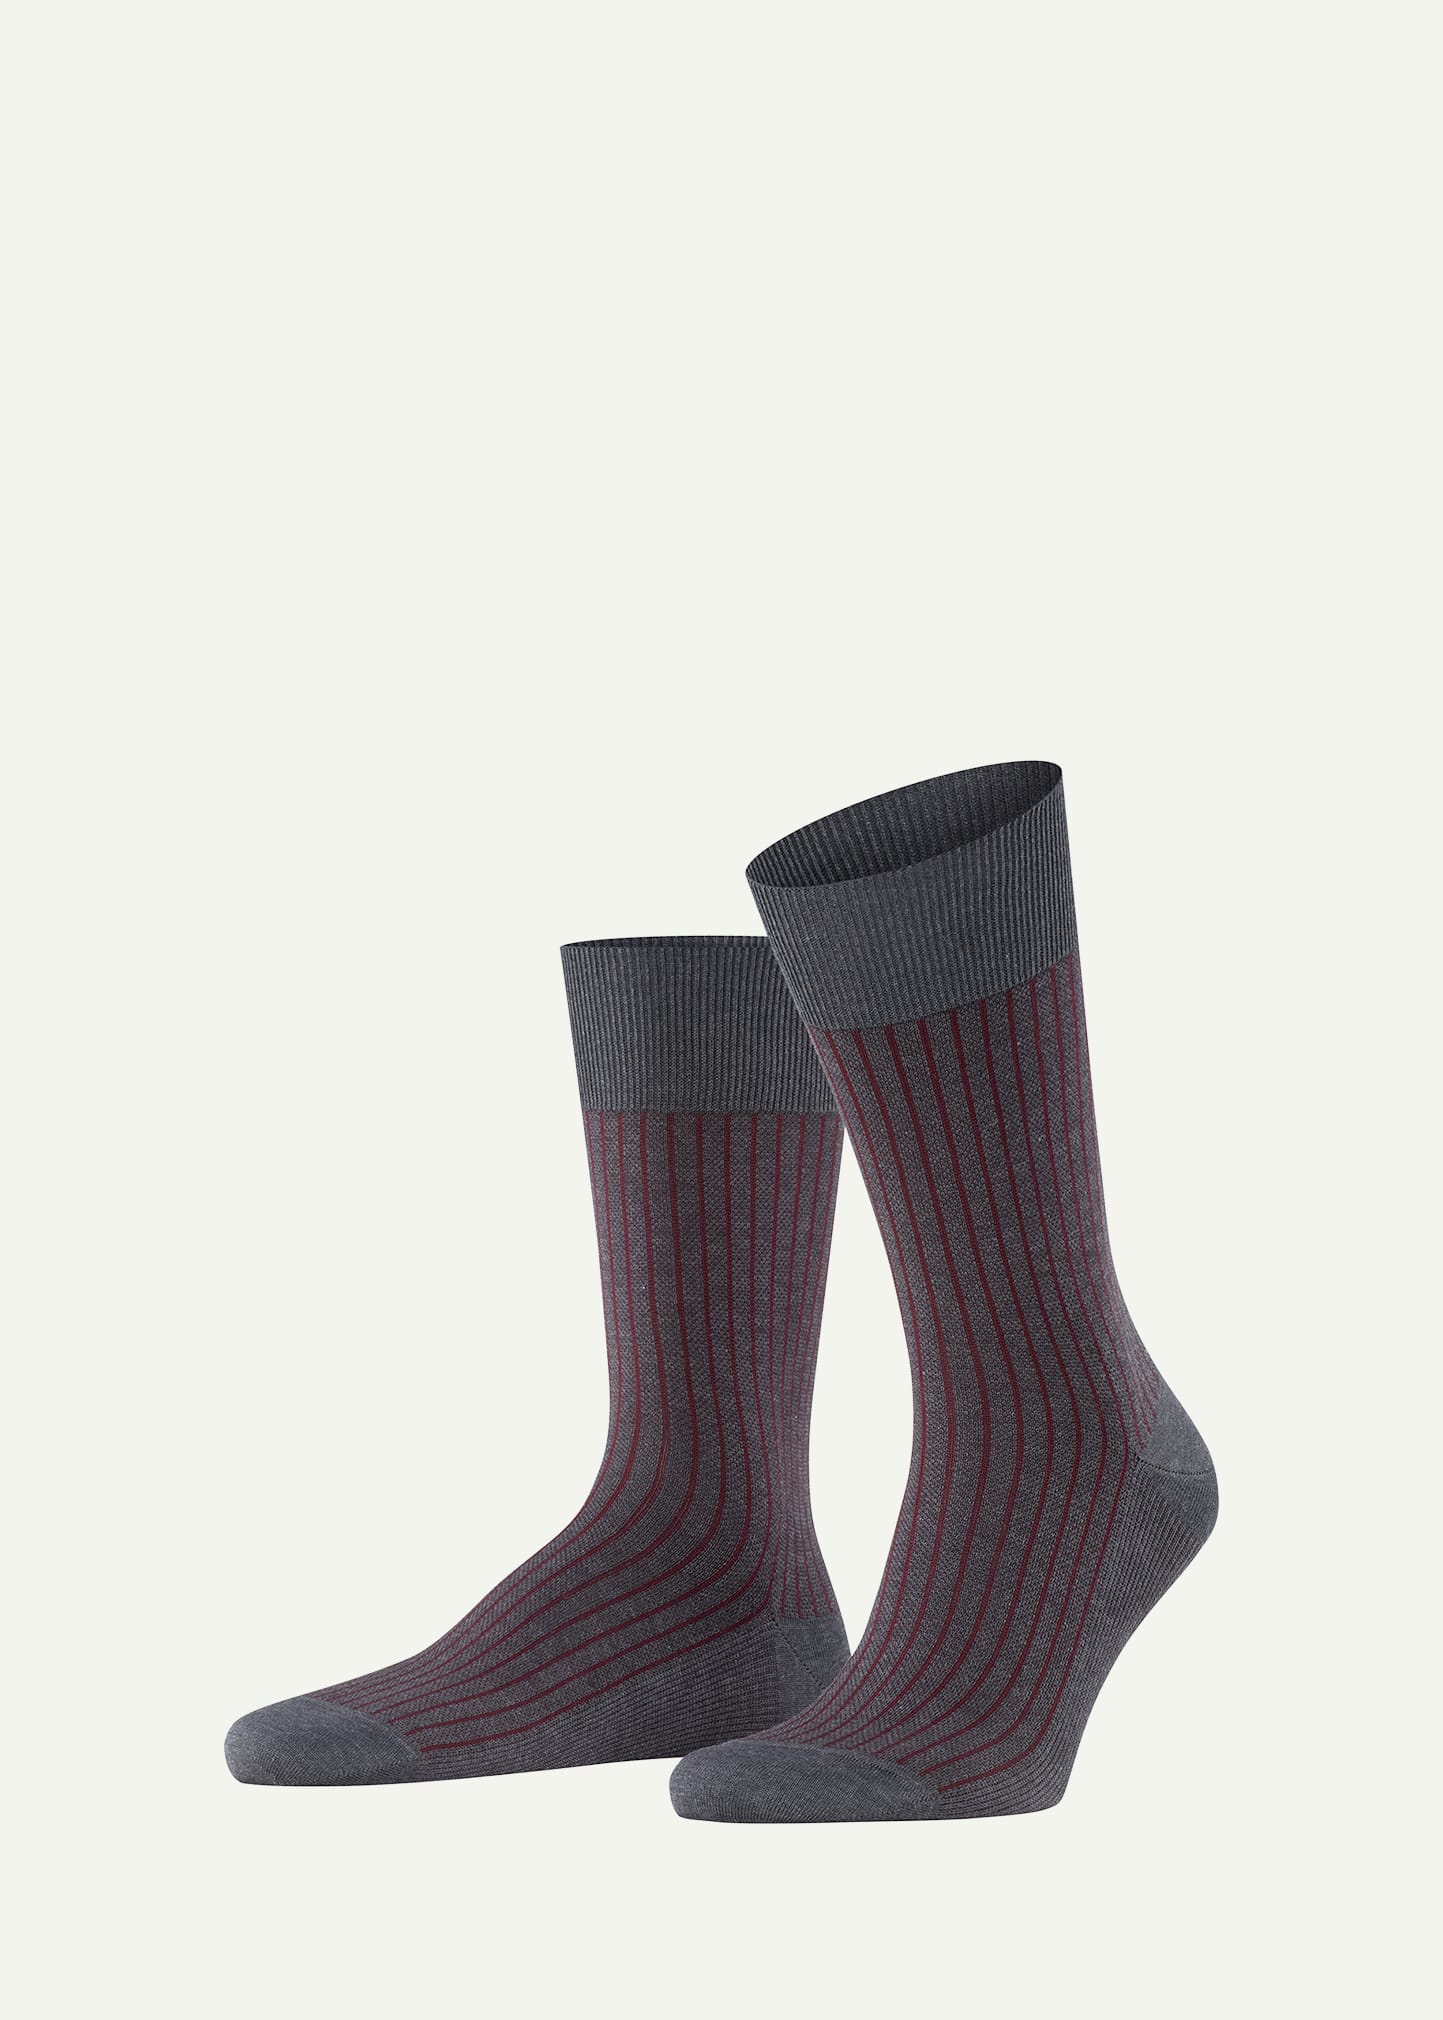 Falke Men's Cotton Stripe Mid-calf Socks In Gray